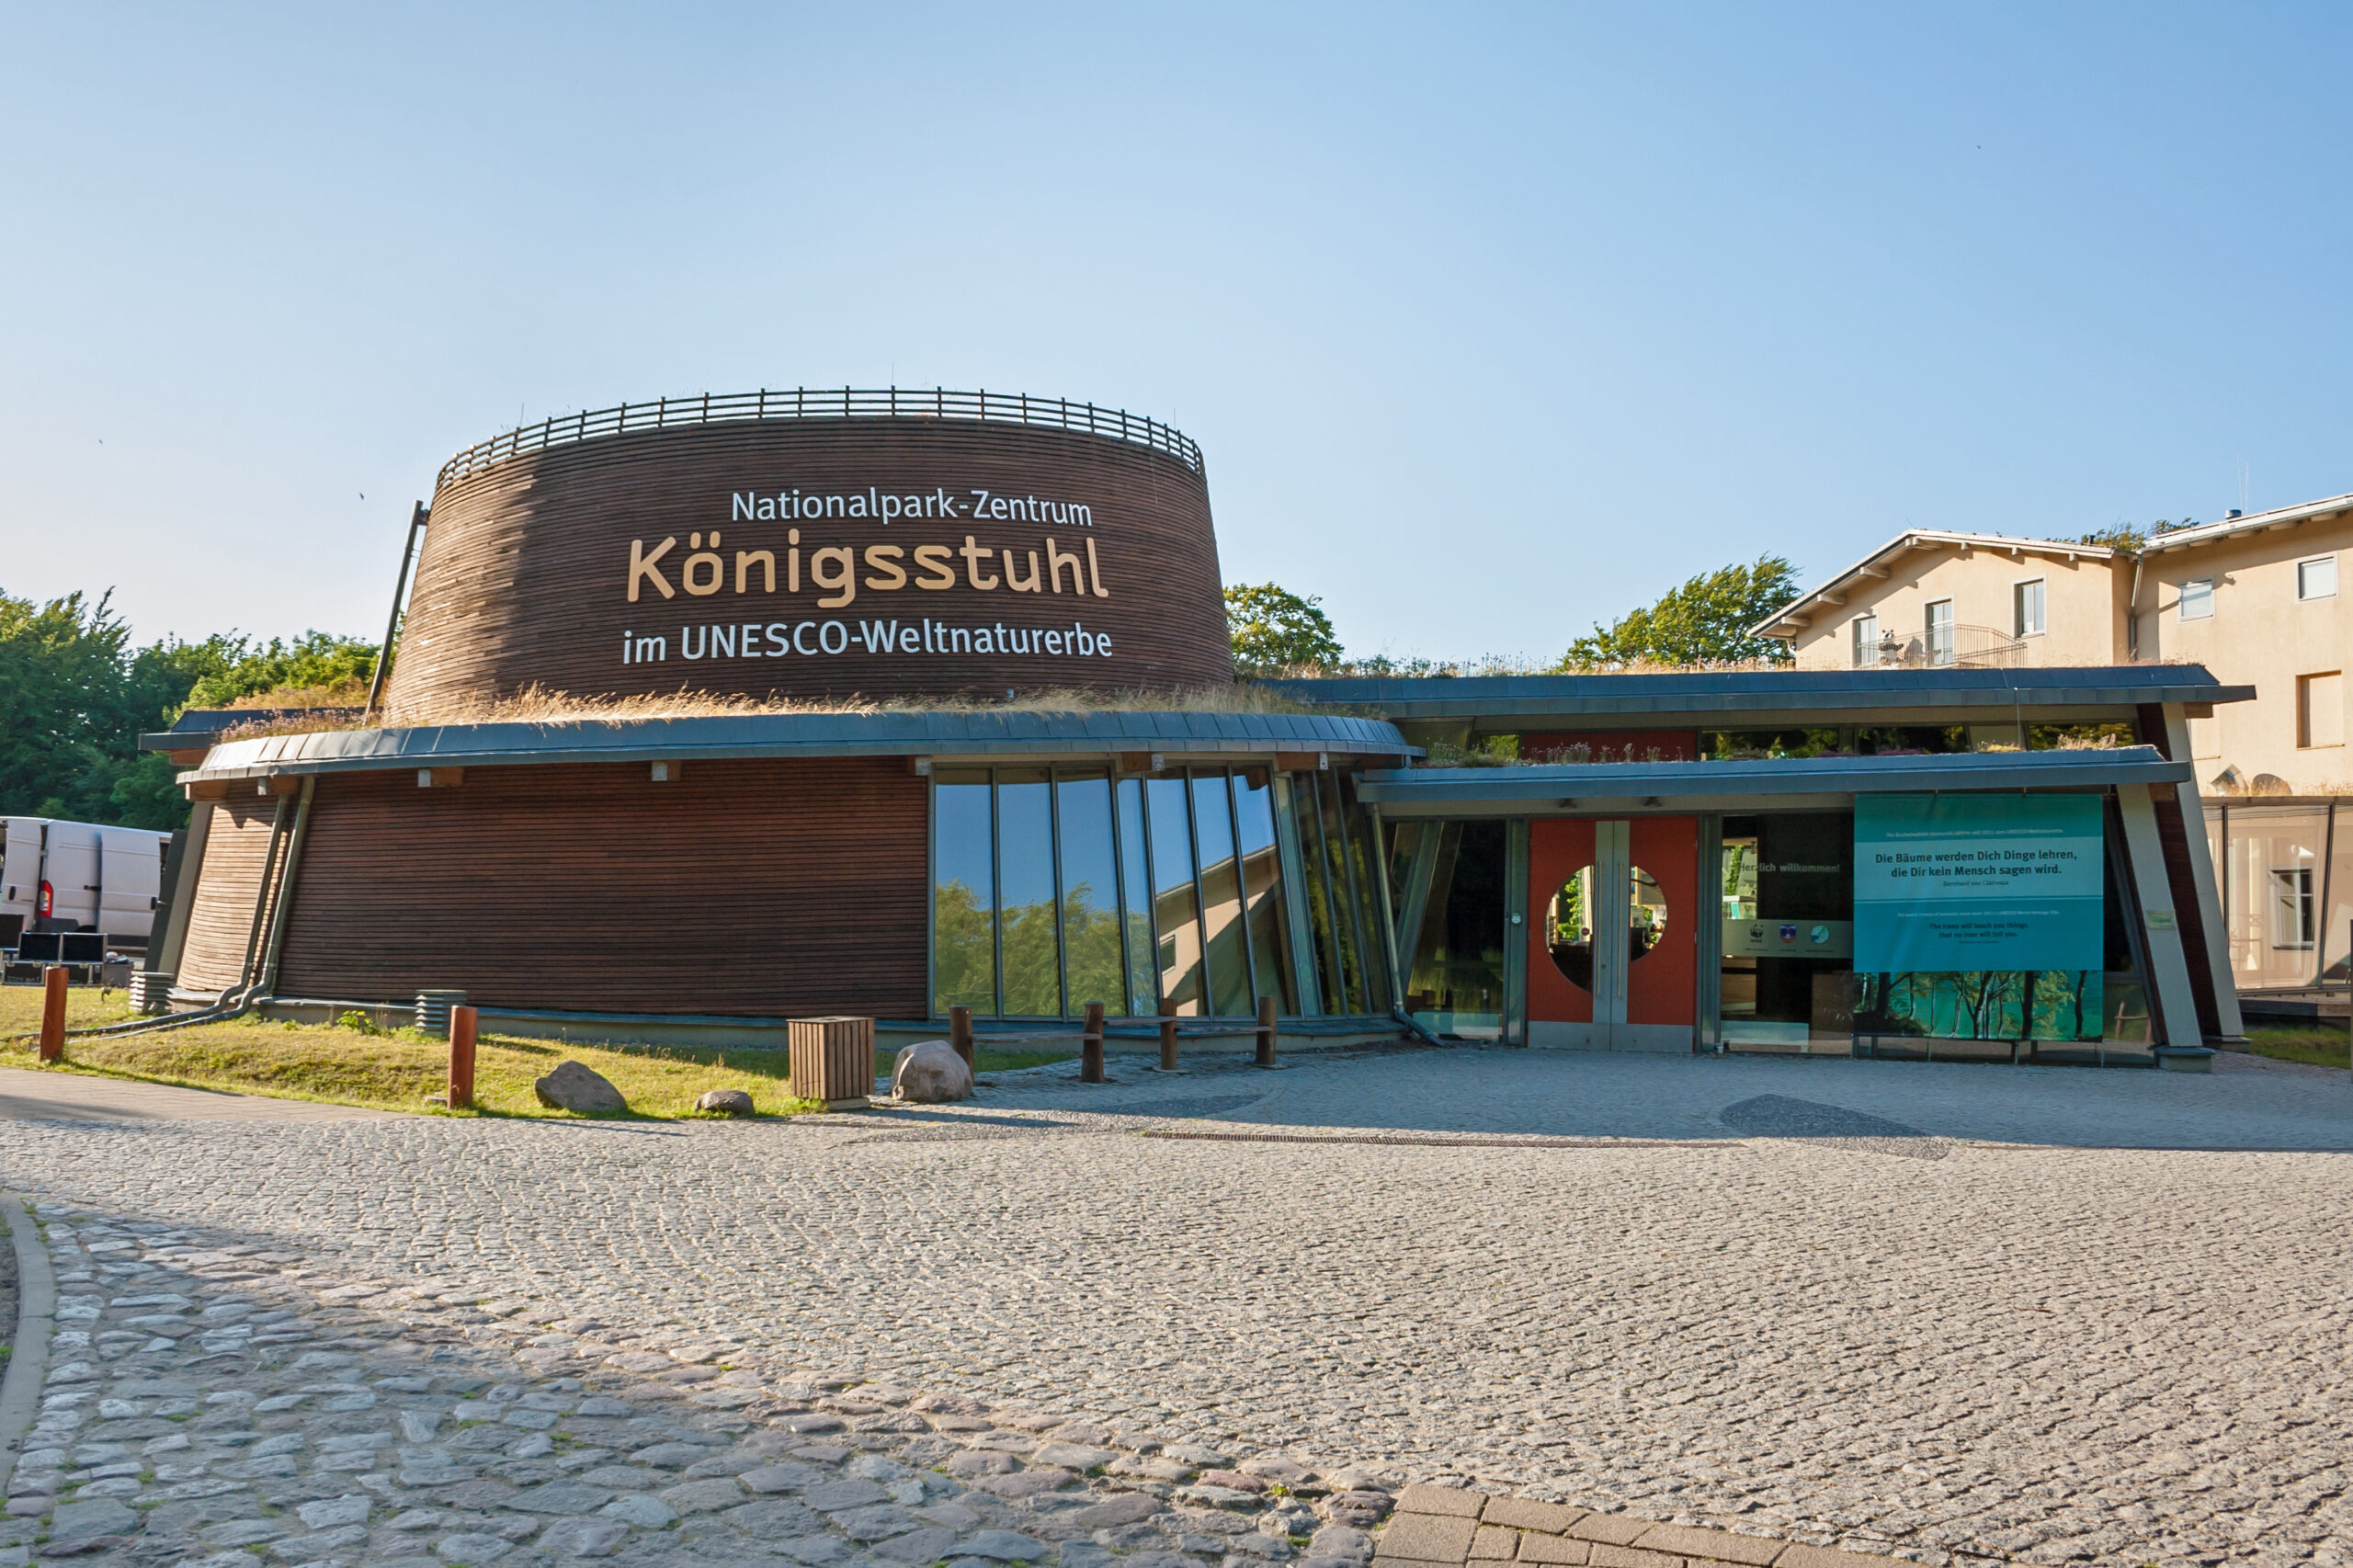 Nationalparkzentrum Königsstuhl, Eingangsgebäude mit einer der berühmtesten Sehenswürdigkeiten der Insel Rügen, dem Kreidefelsen Königsstuhl.